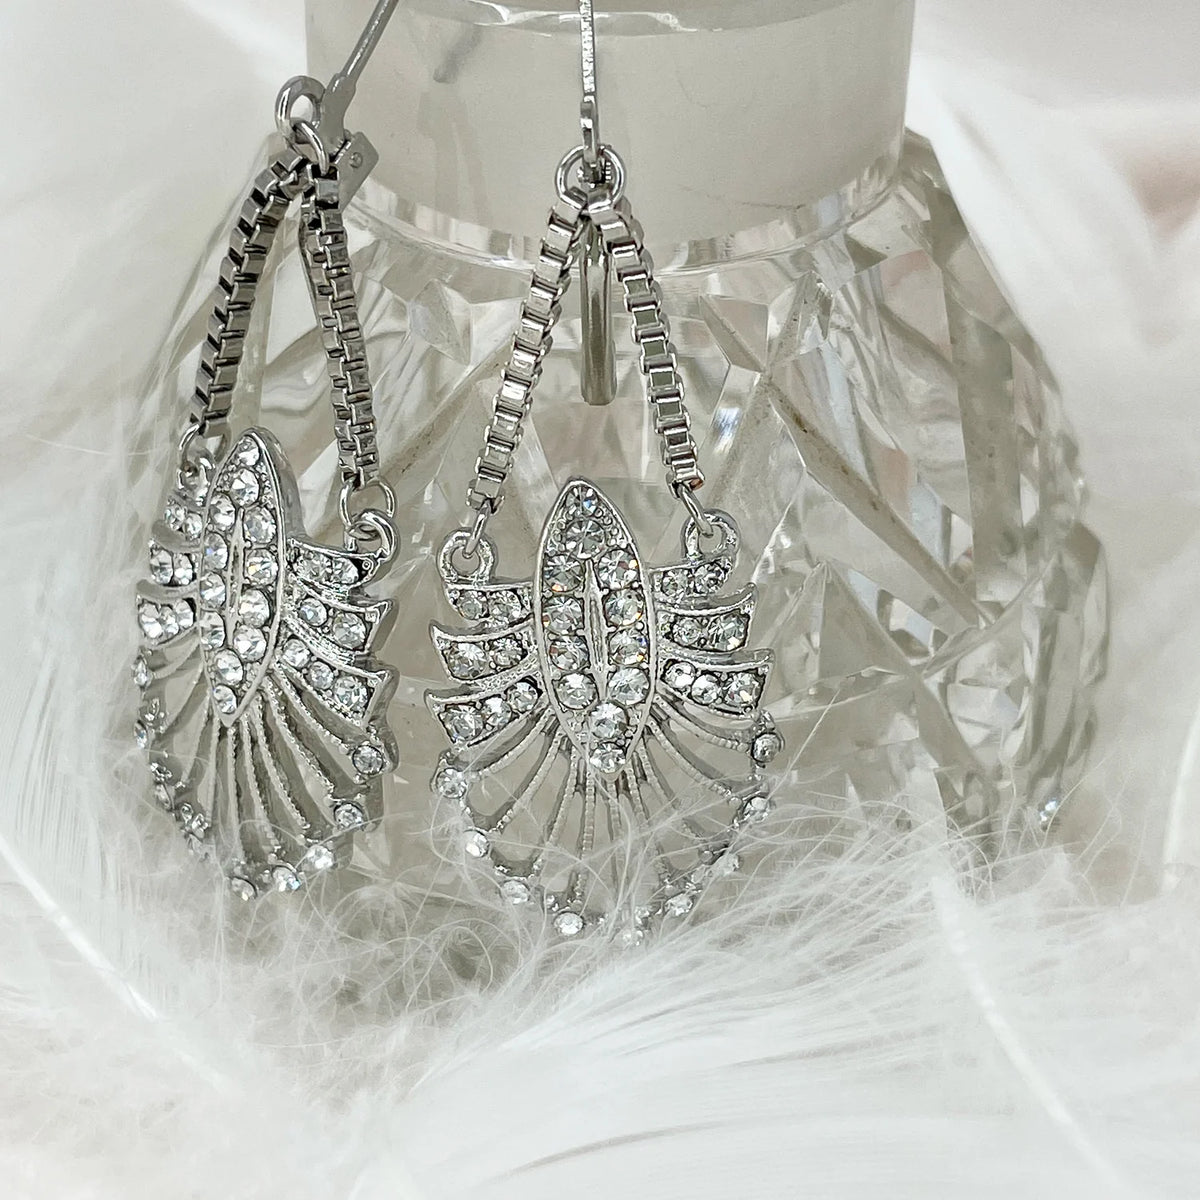 Vintage art deco style crystal drop earrings